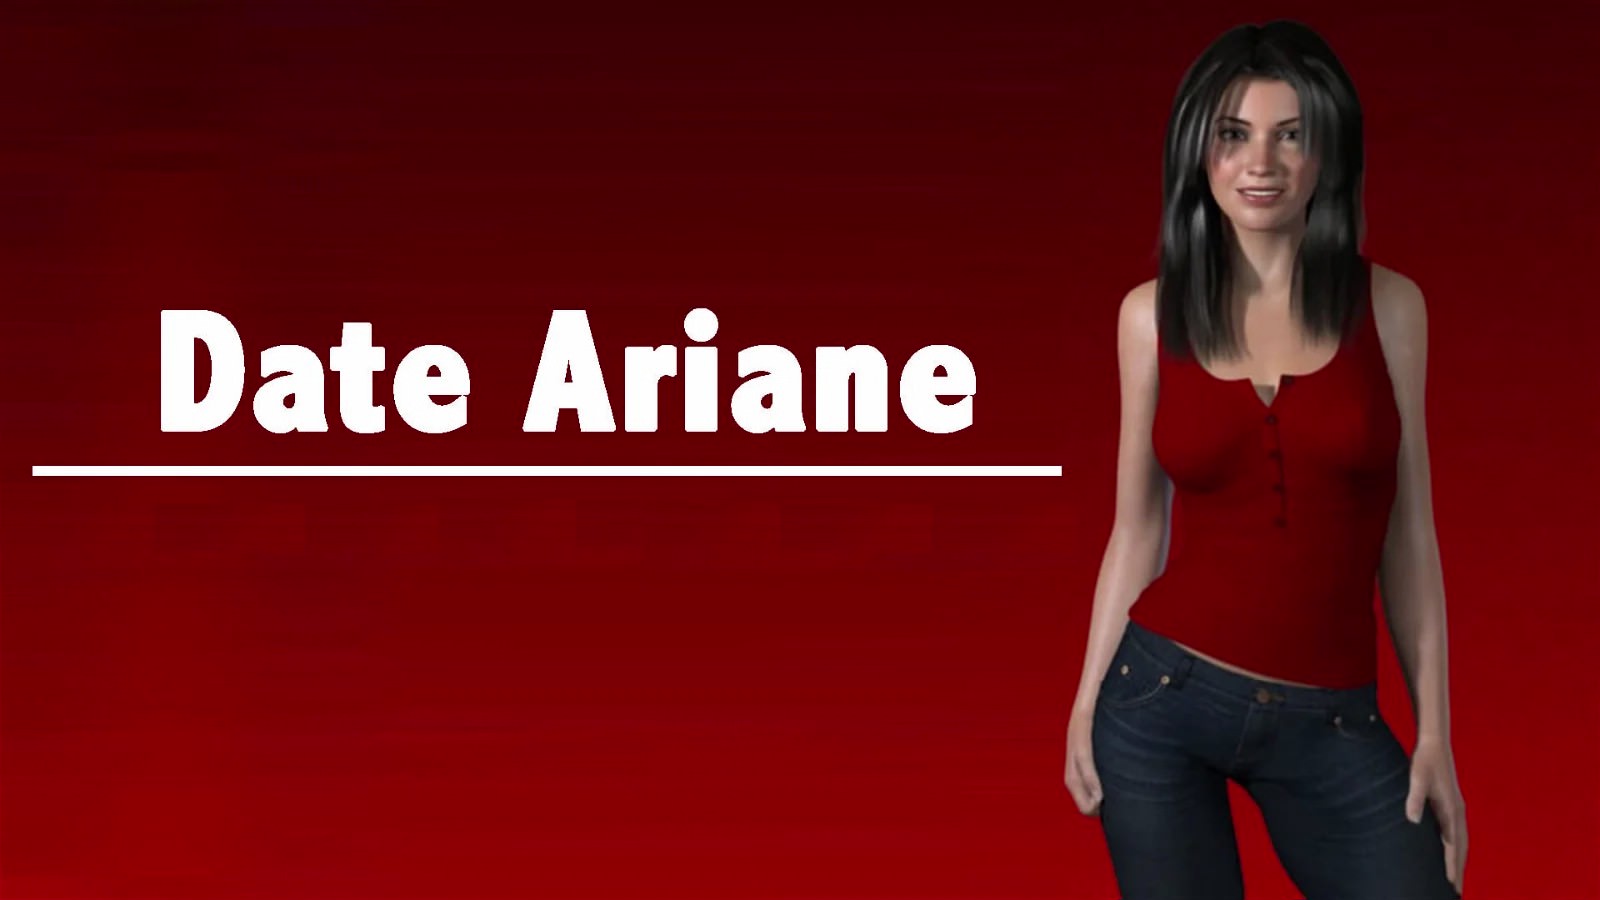 Date-Ariane